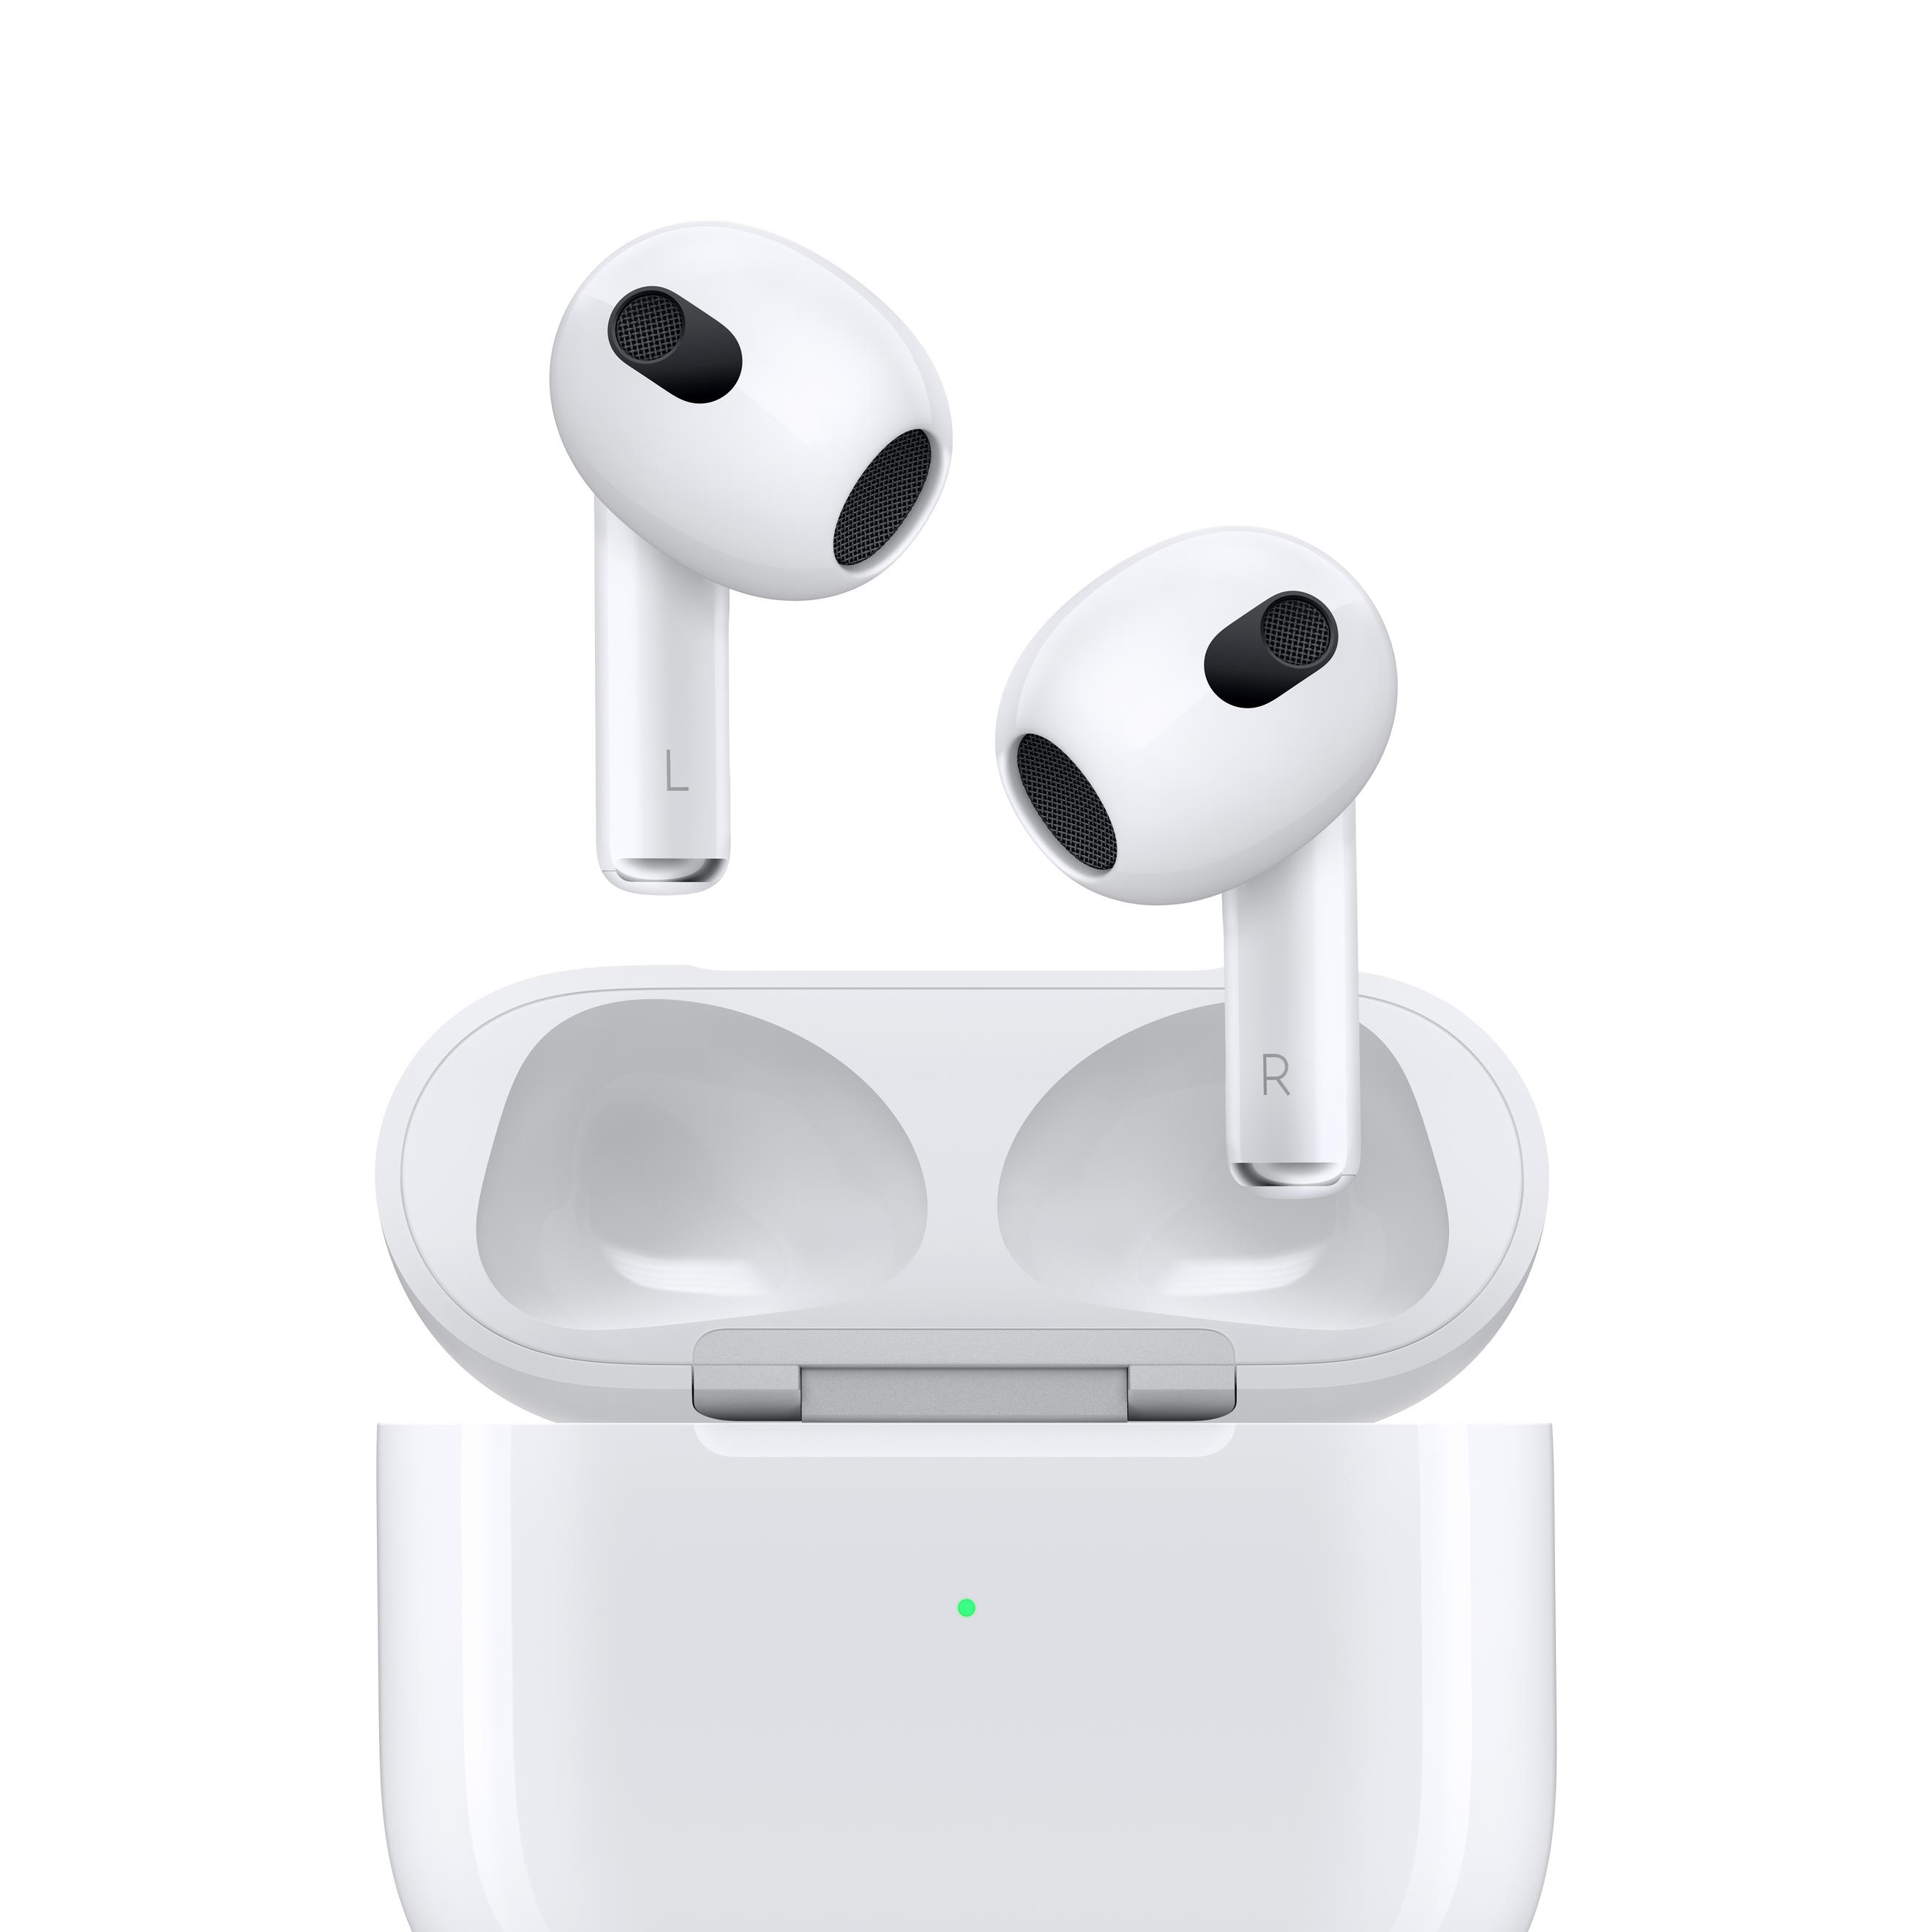 Offerta per Apple - AirPods (terza generazione) AirPods Auricolare Wireless In-ear Musica e Chiamate Bluetooth Bianco a 179€ in Expert